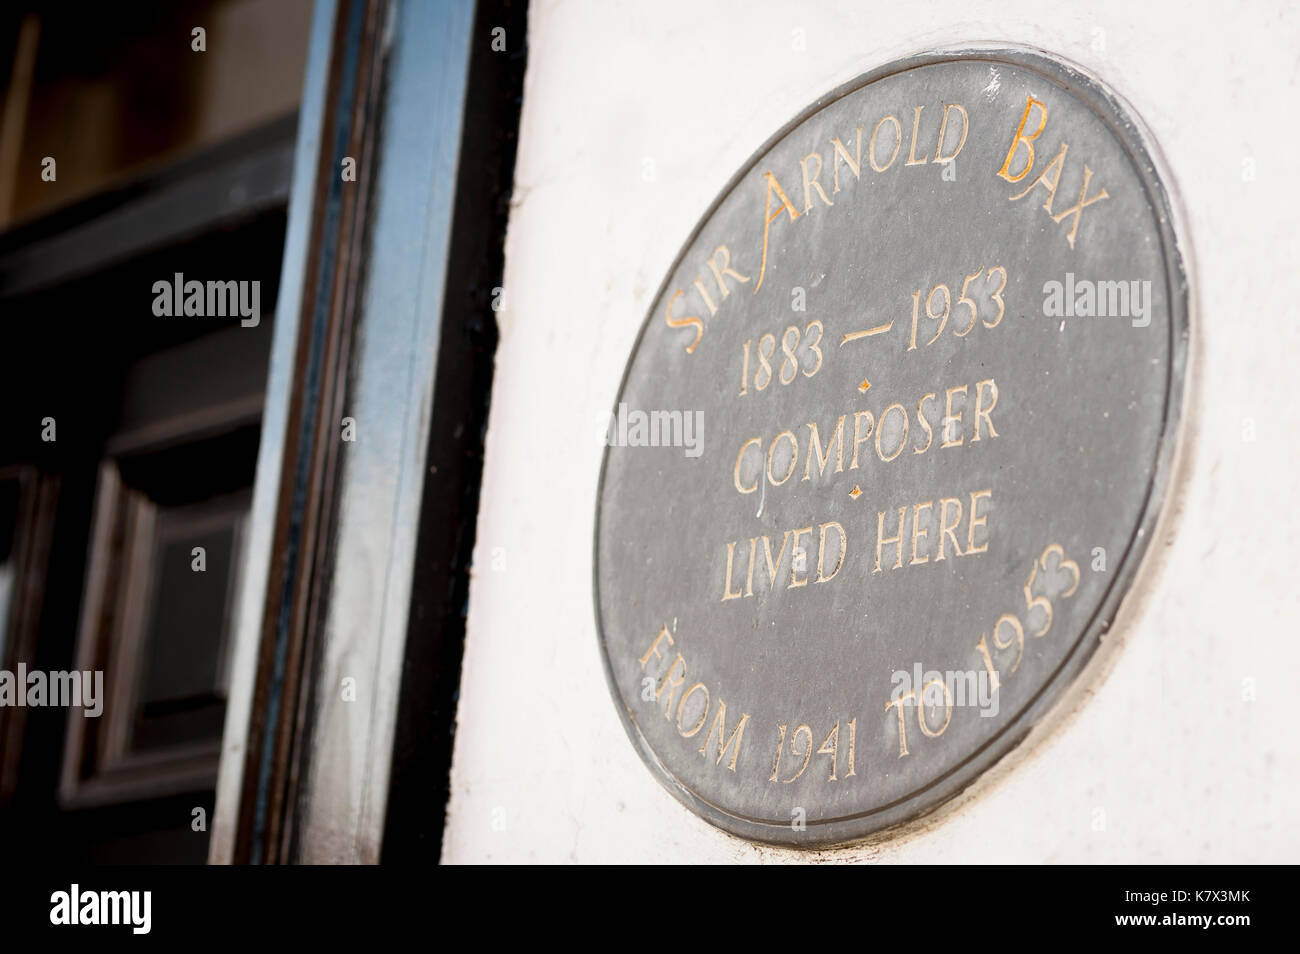 Sir Arnold Bax Komponist, Schwarze Plakette an der Wand des White Horse Pub in Storrington, West Sussex, England, Großbritannien Stockfoto